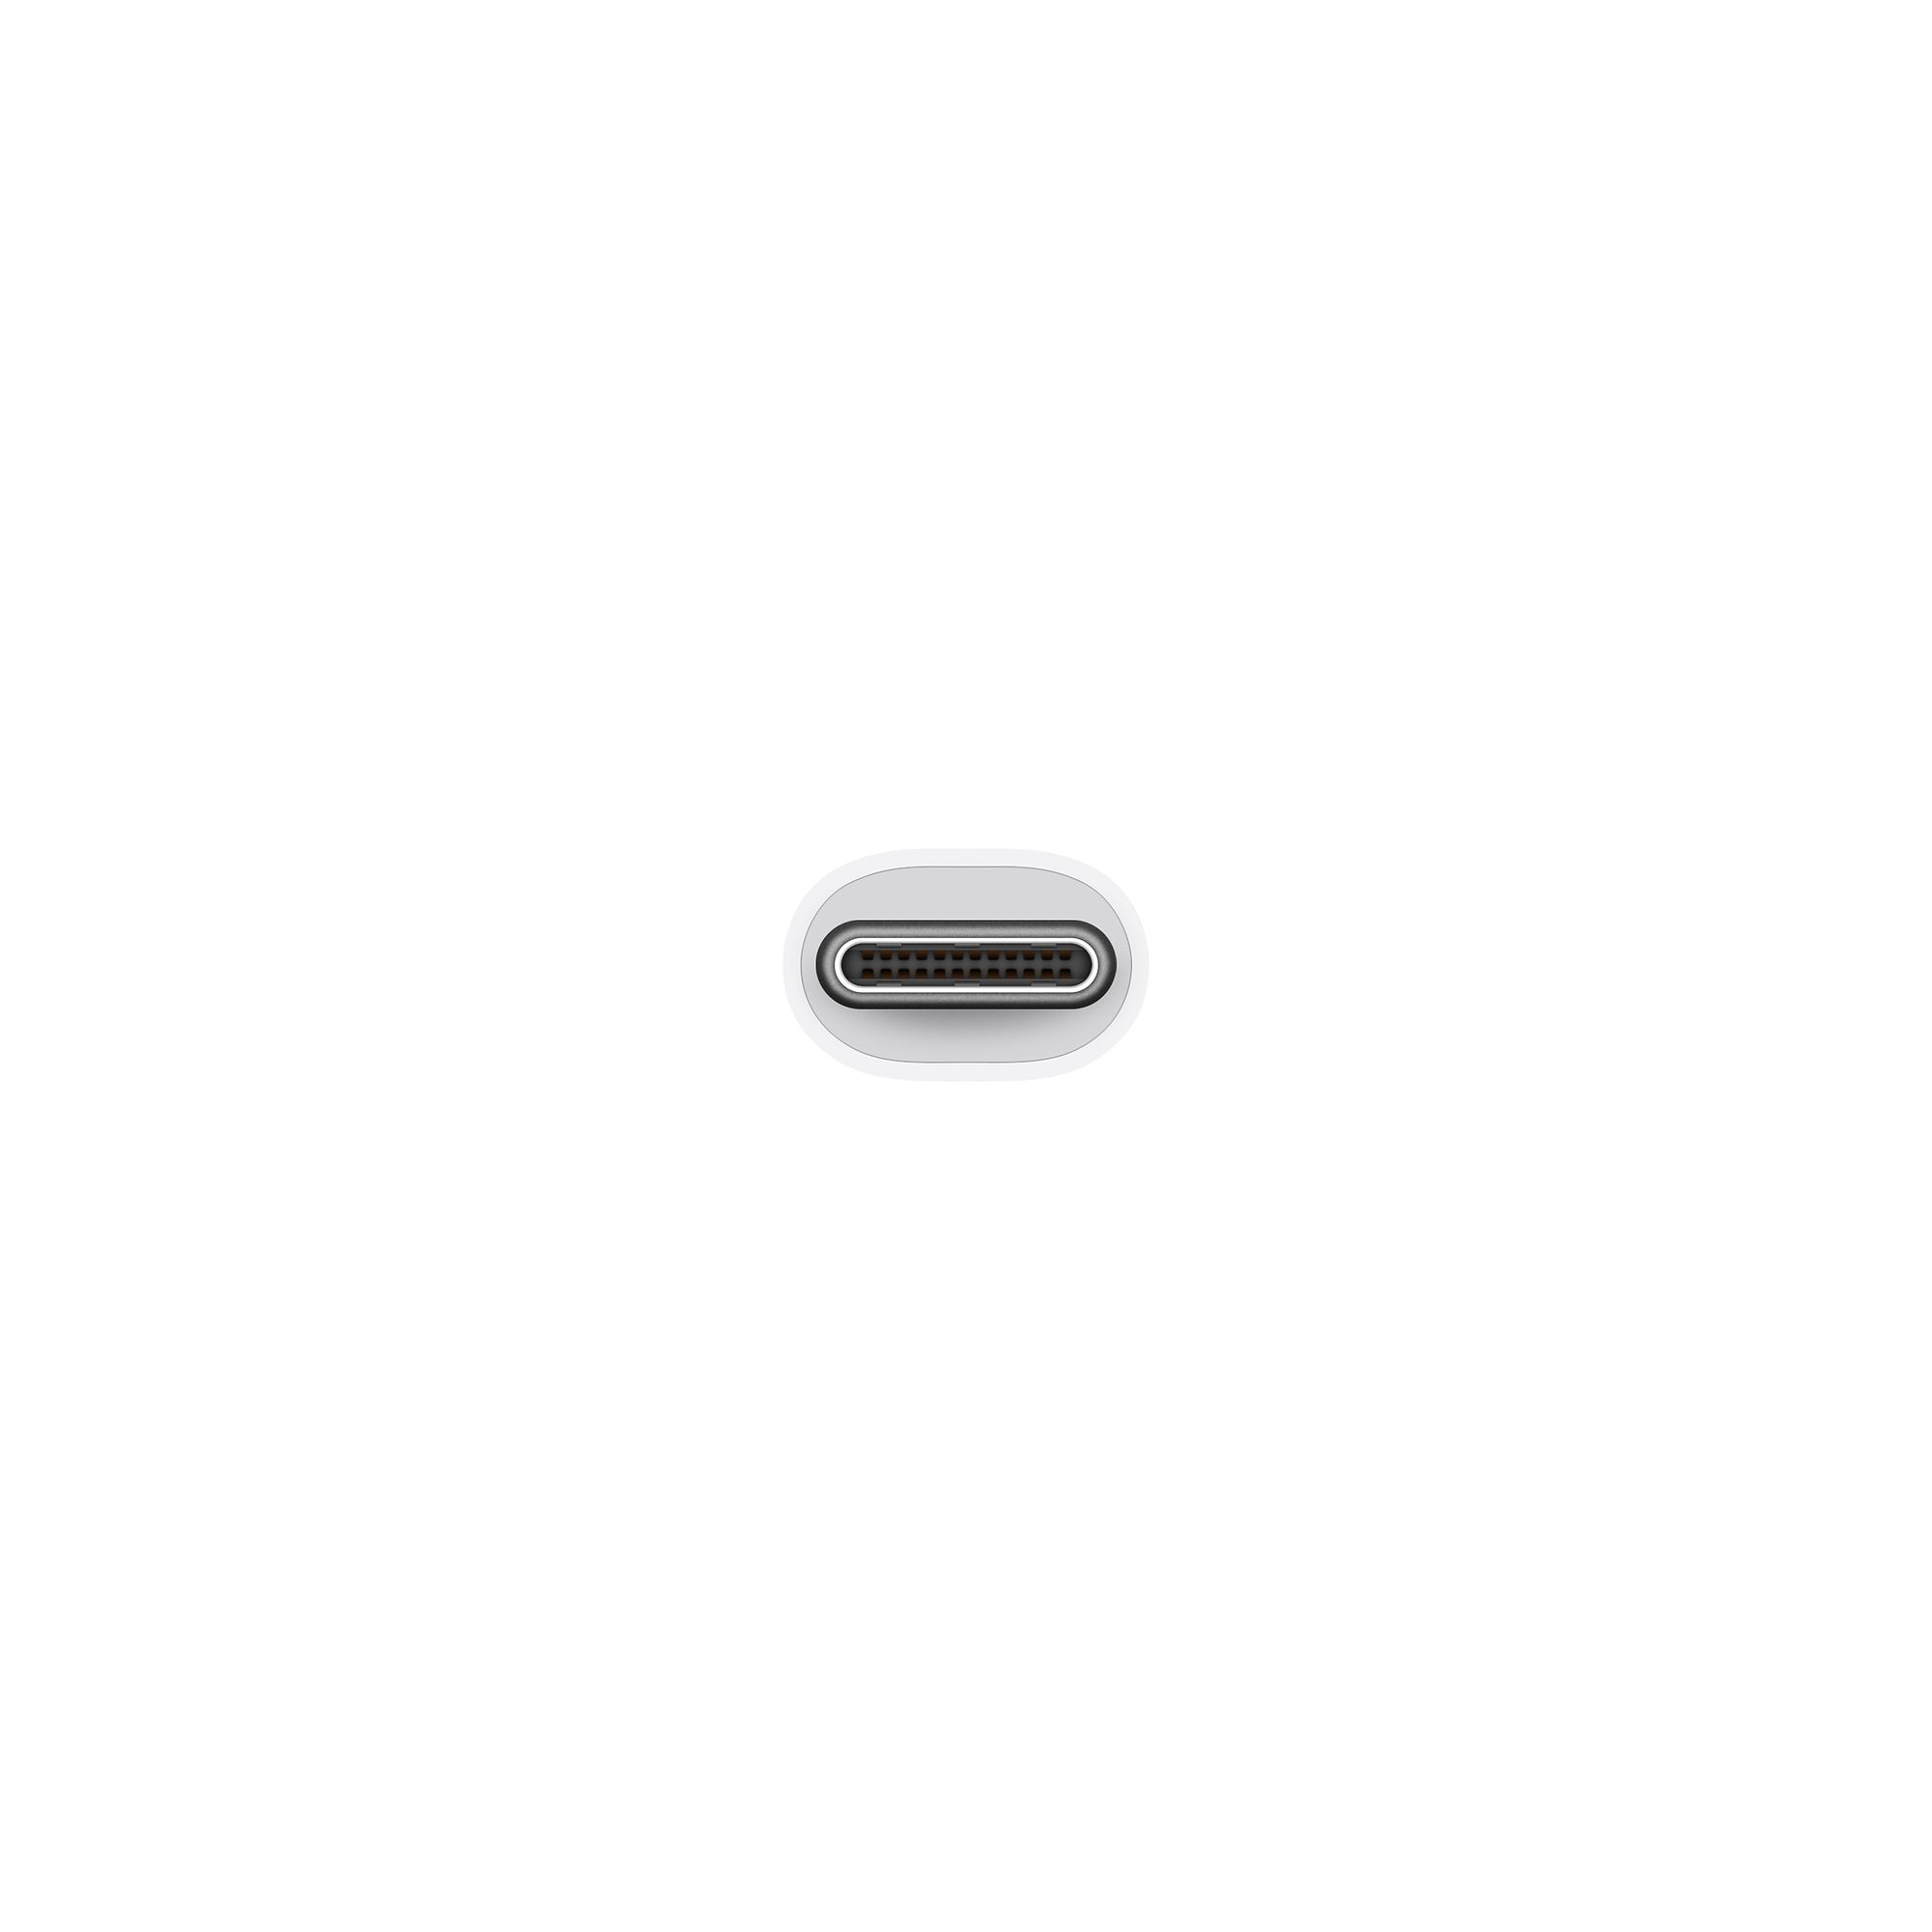 Apple USB-C Digital AV Multiport Adapter 4K60Hz MUF82